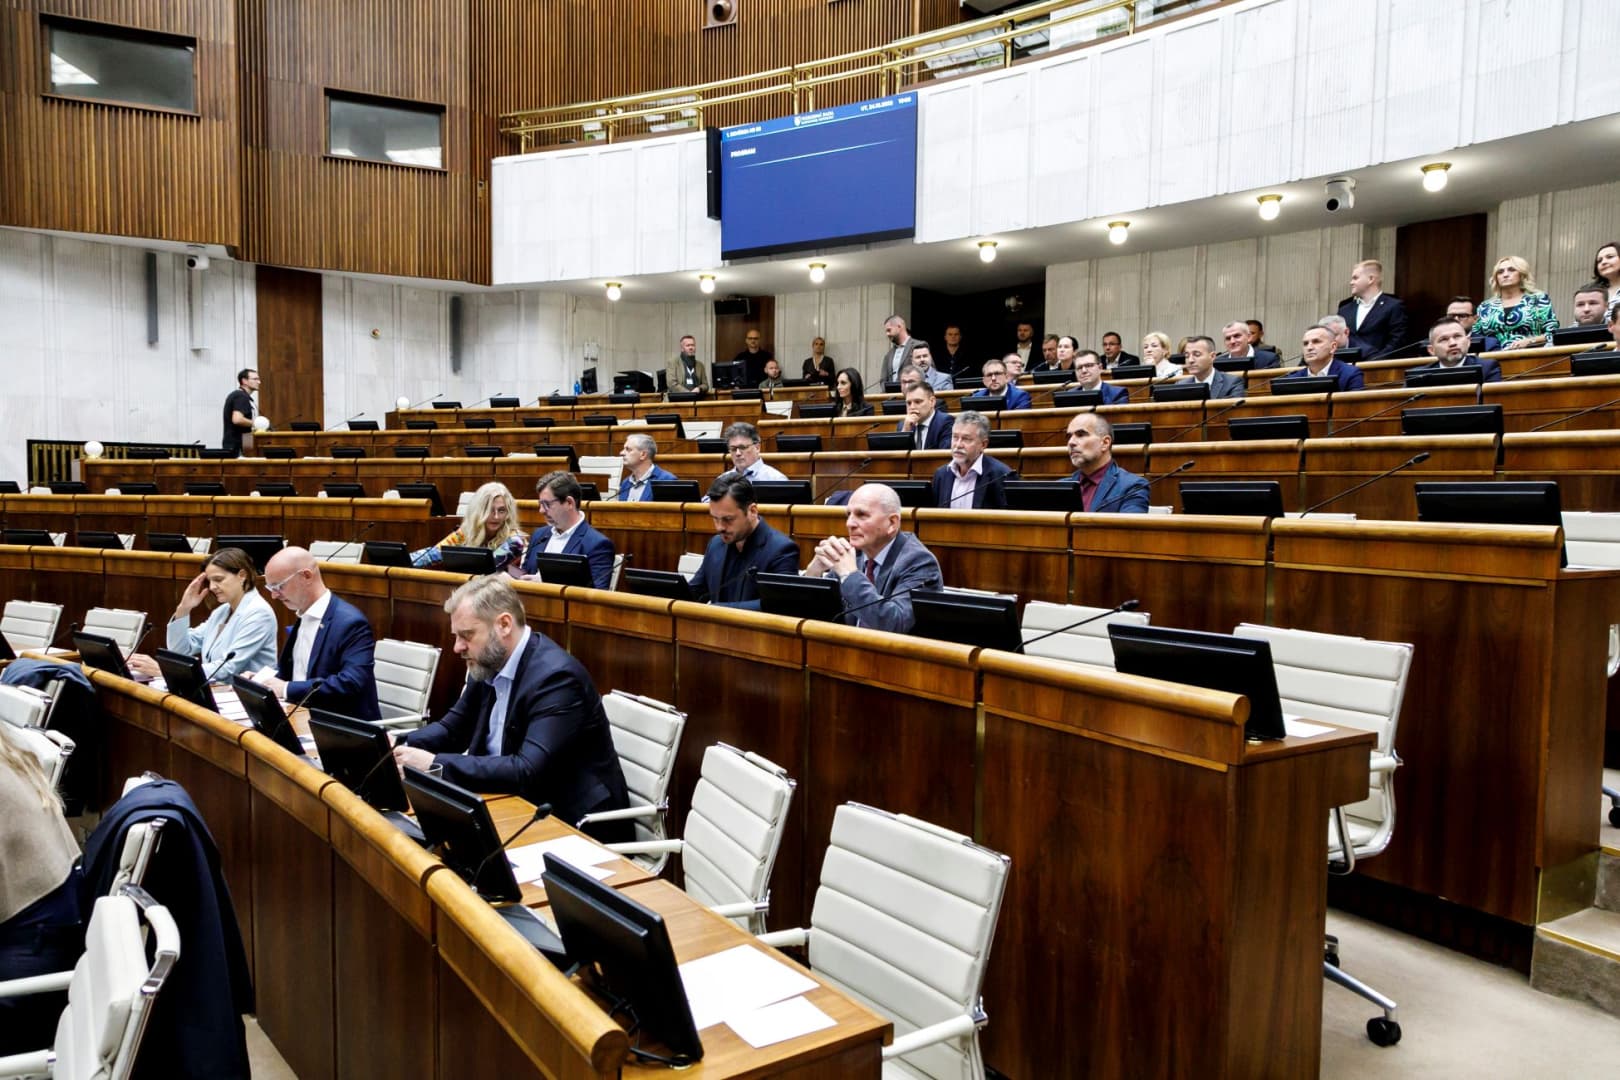 FELMÉRÉS: Erősödik a kormánykoalíció, a Magyar Szövetség bejutna a parlamentbe